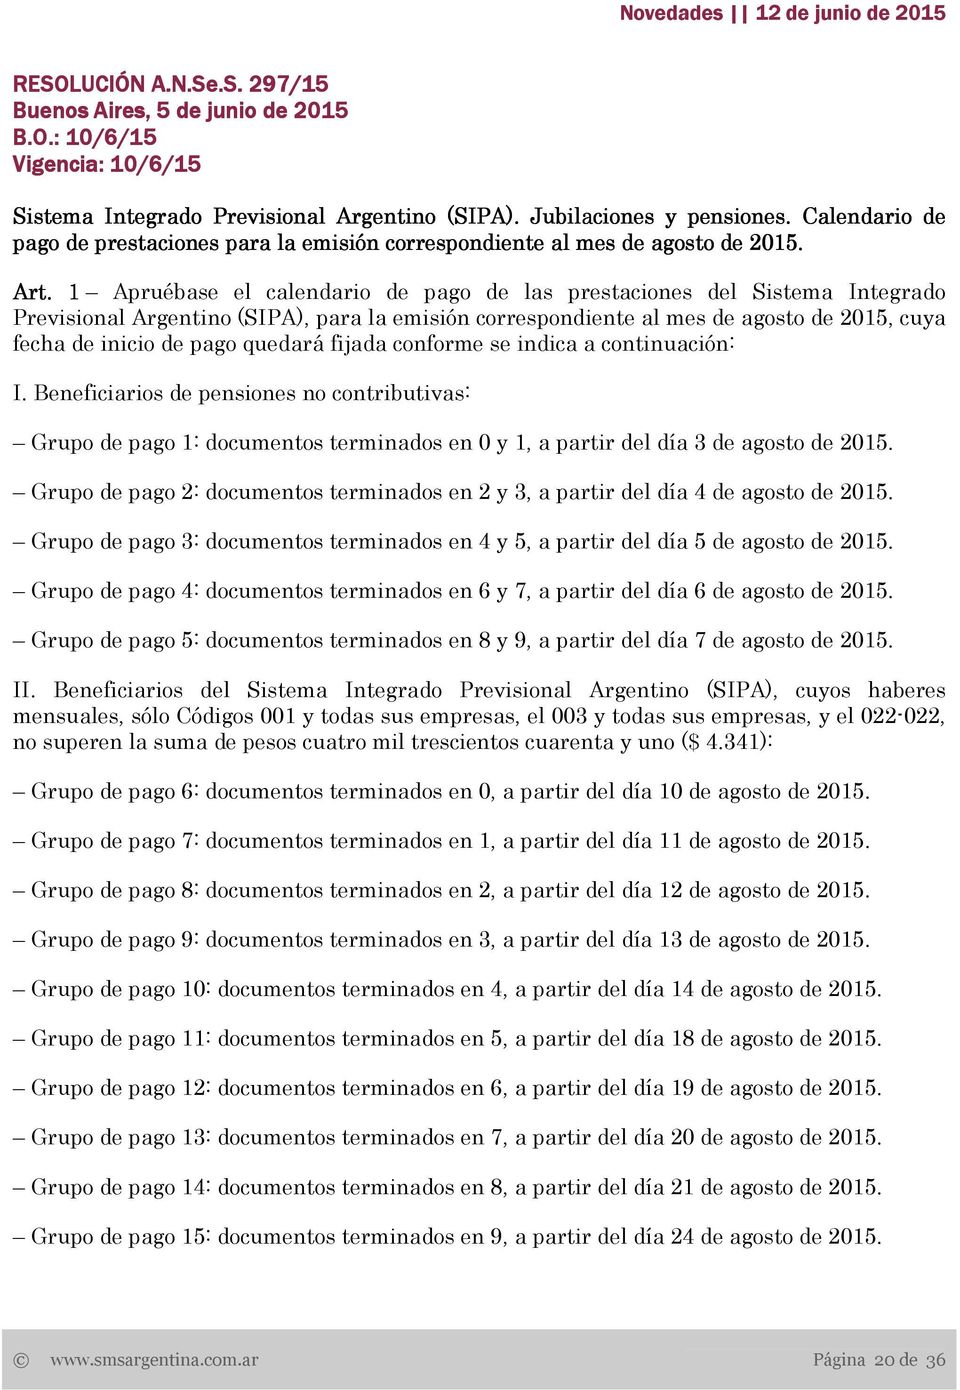 1 Apruébase el calendario de pago de las prestaciones del Sistema Integrado Previsional Argentino (SIPA), para la emisión correspondiente al mes de agosto de 2015, cuya fecha de inicio de pago